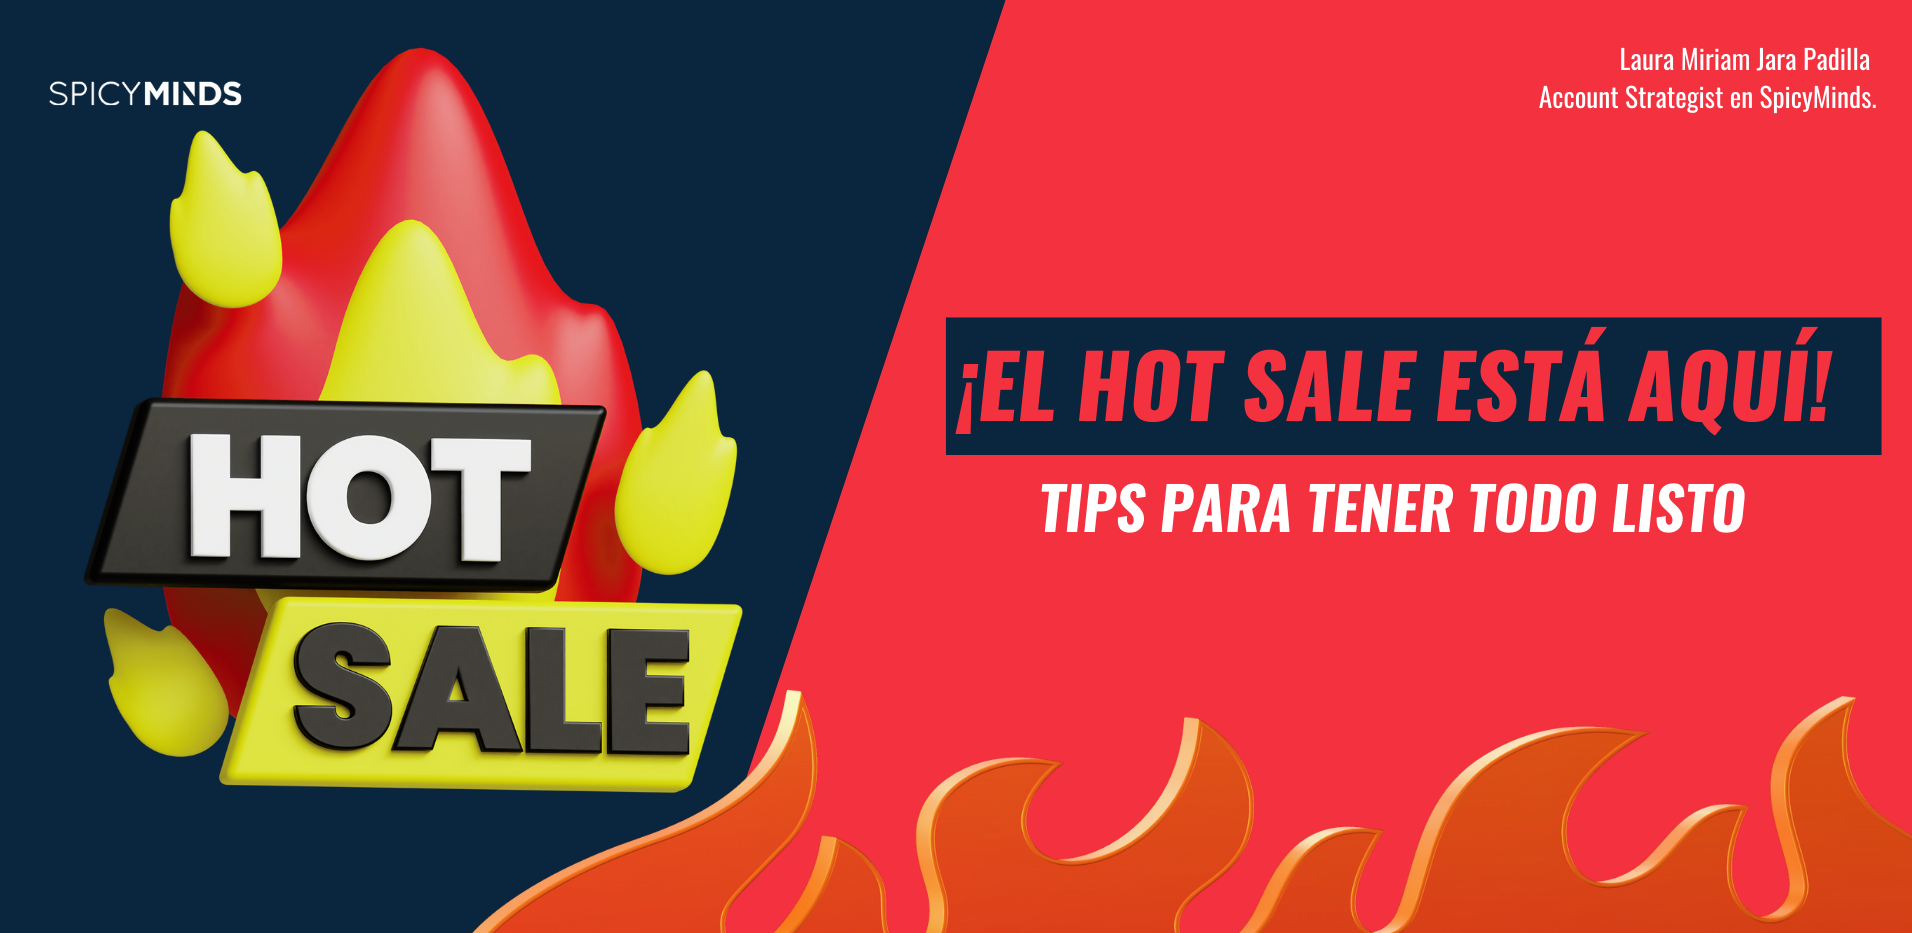 Imagen: ¡El Hot Sale está aquí! Tips para tener todo listo